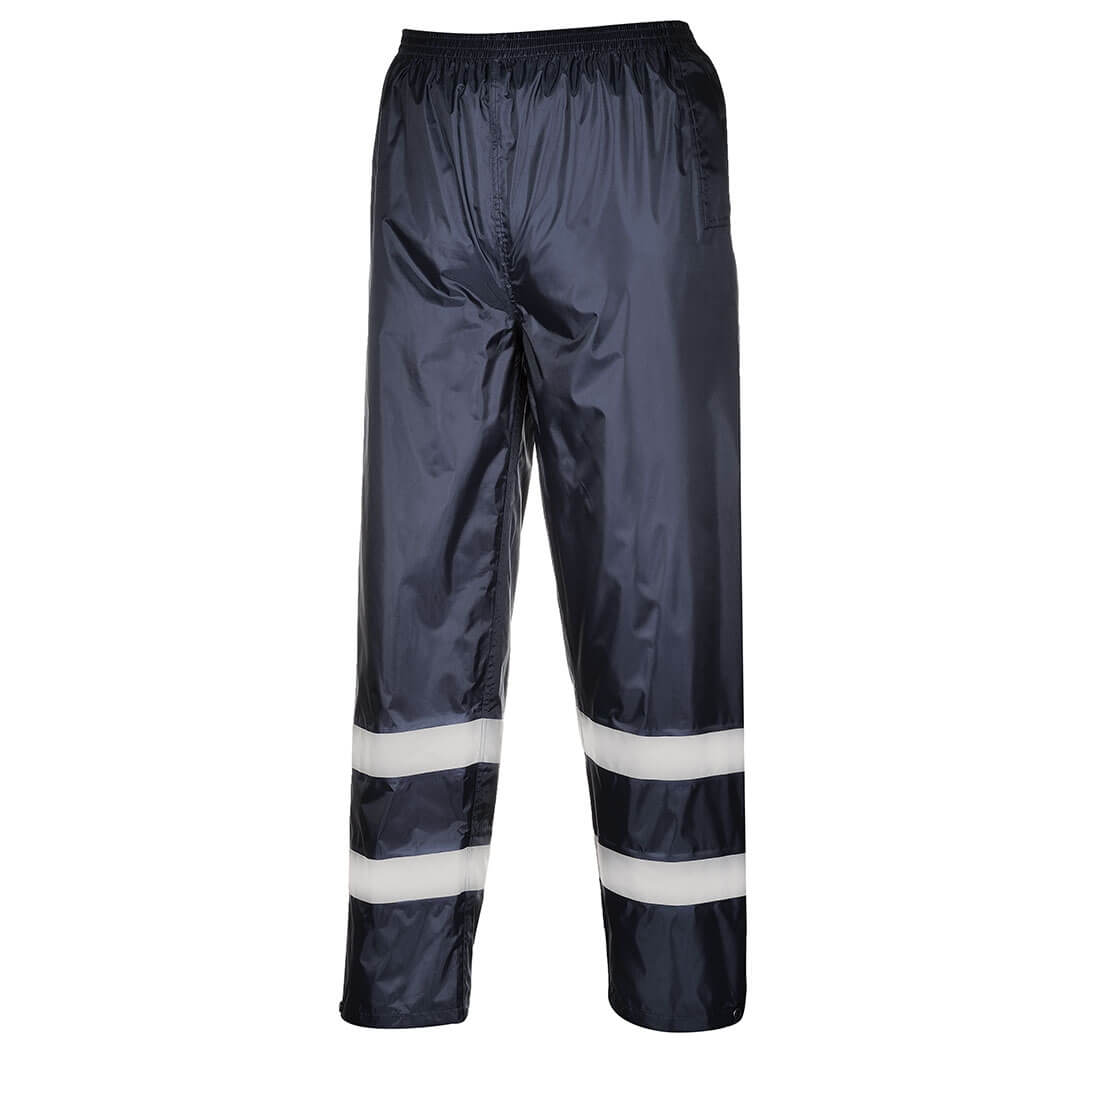 Pantalon de pluie IONA Classic - Les vêtements de protection